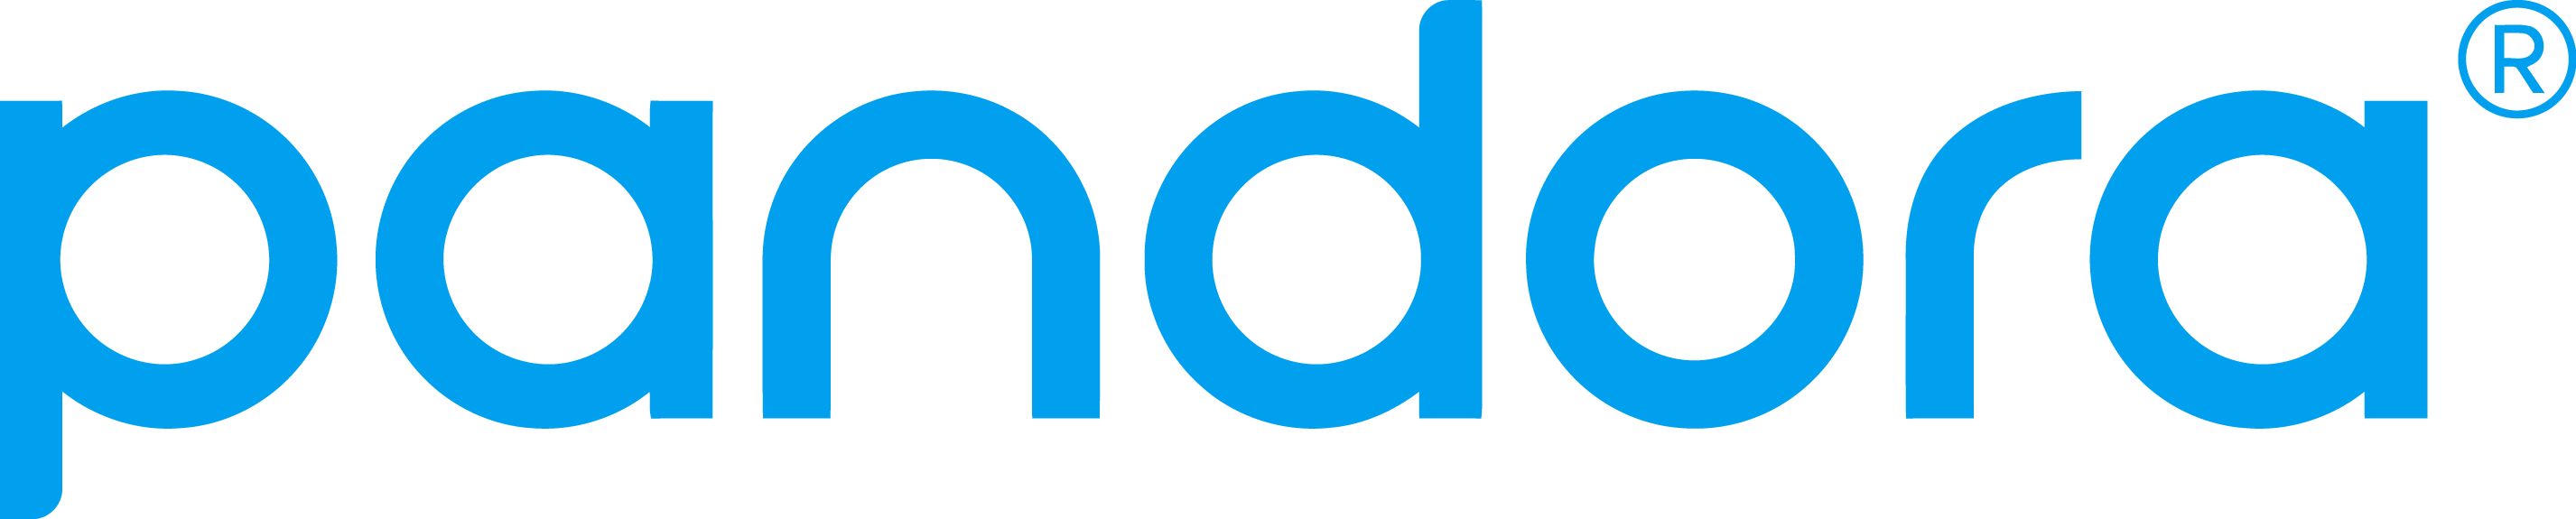 Pandora Logo Radio - Pandora Music Logo Clipart (2853x575), Png Download